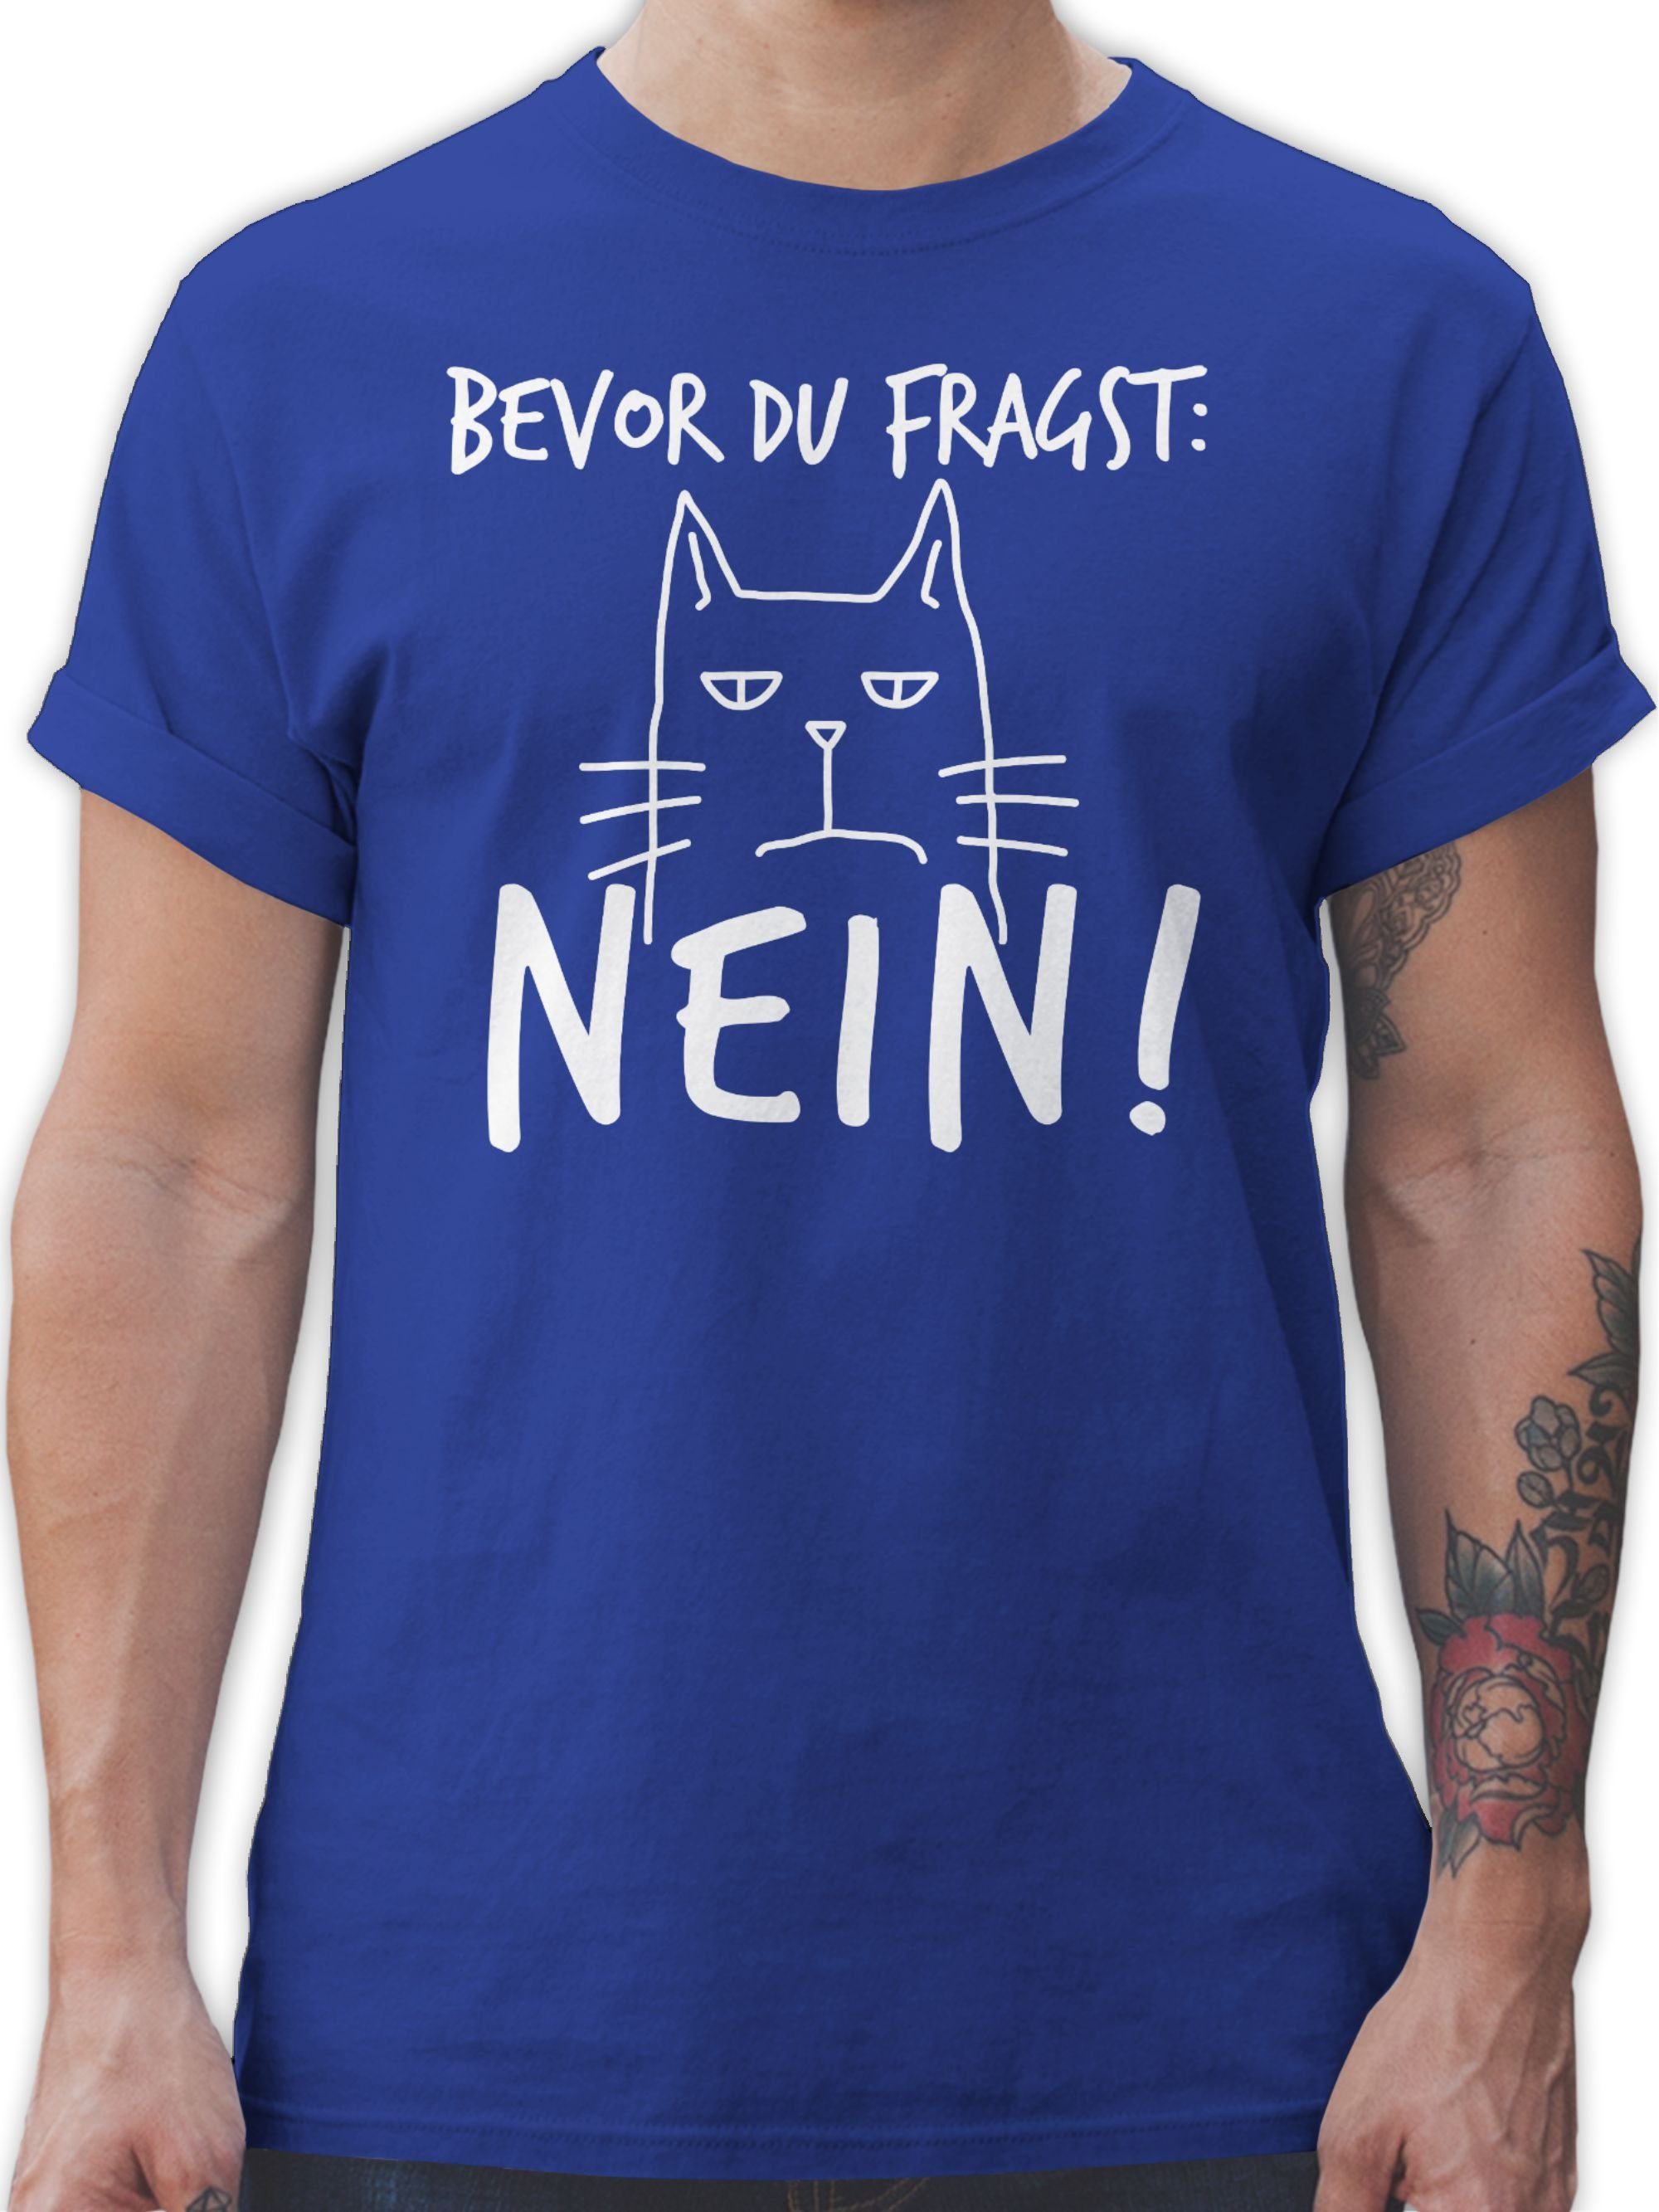 Sprüche Nein! du Shirtracer Royalblau 03 - T-Shirt fragst: Spruch Katze Weiß mit - Bevor Statement